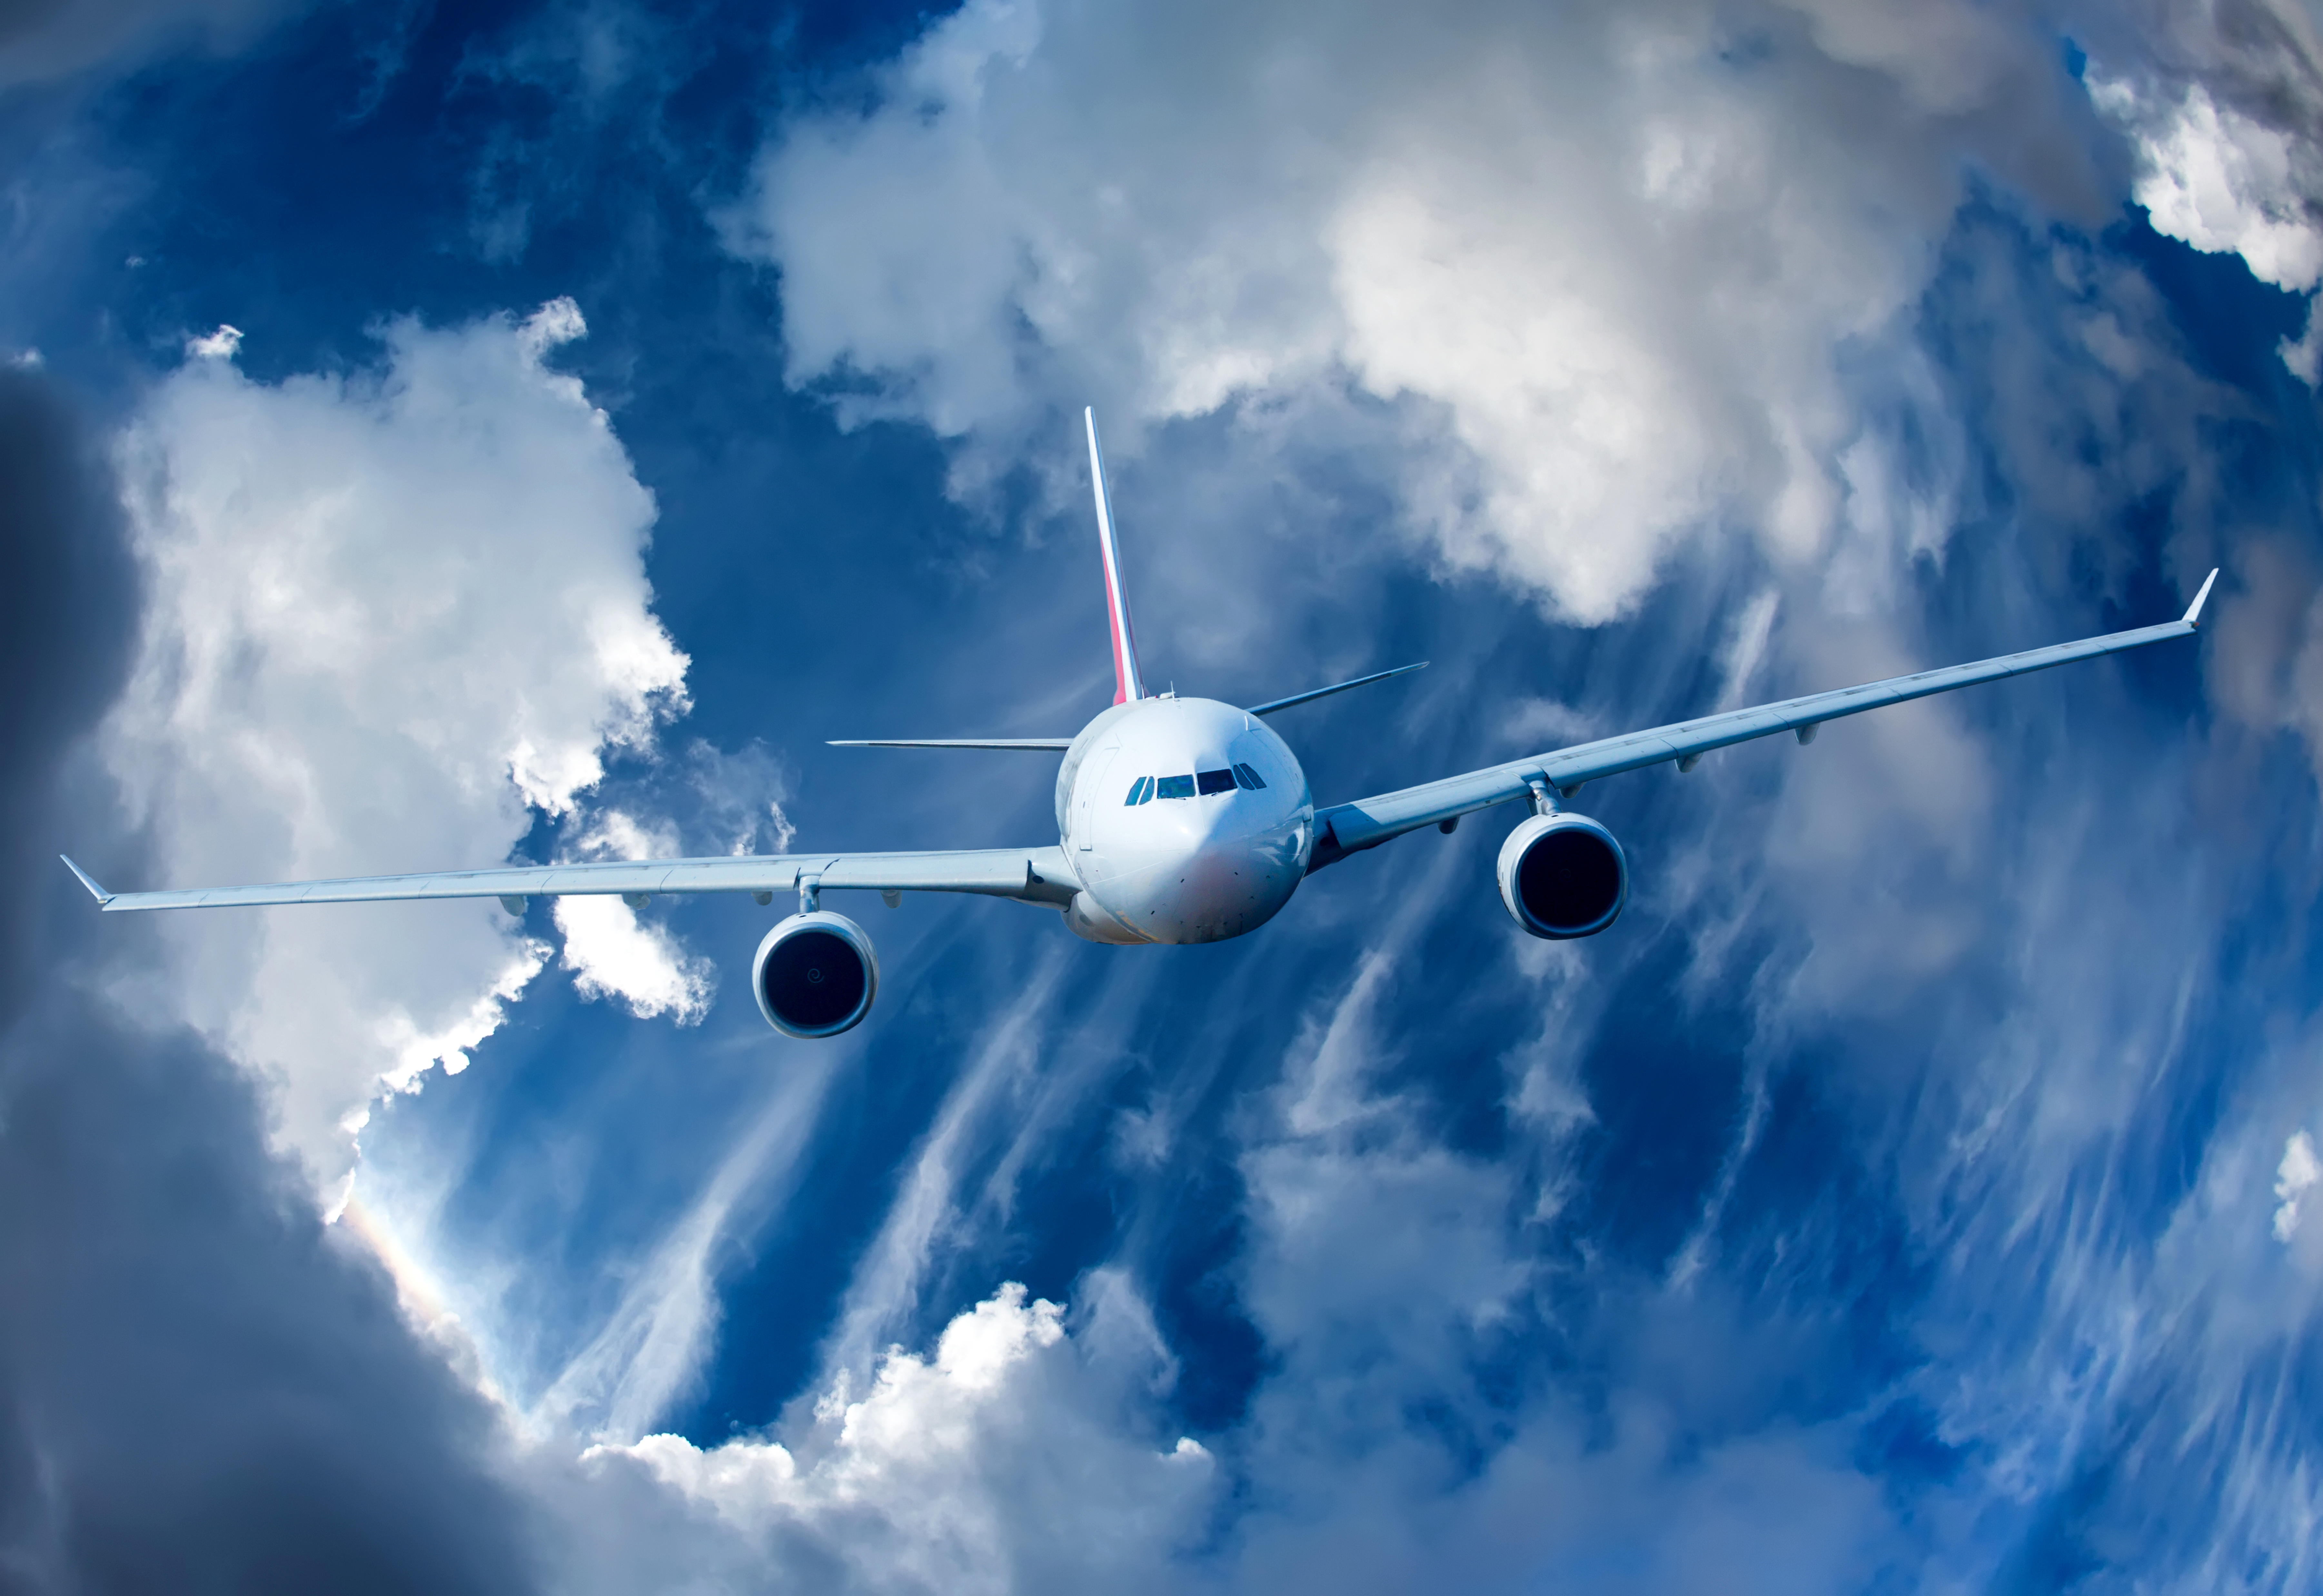 Aircraft Cloud Passenger Plane Sky 7204x4950